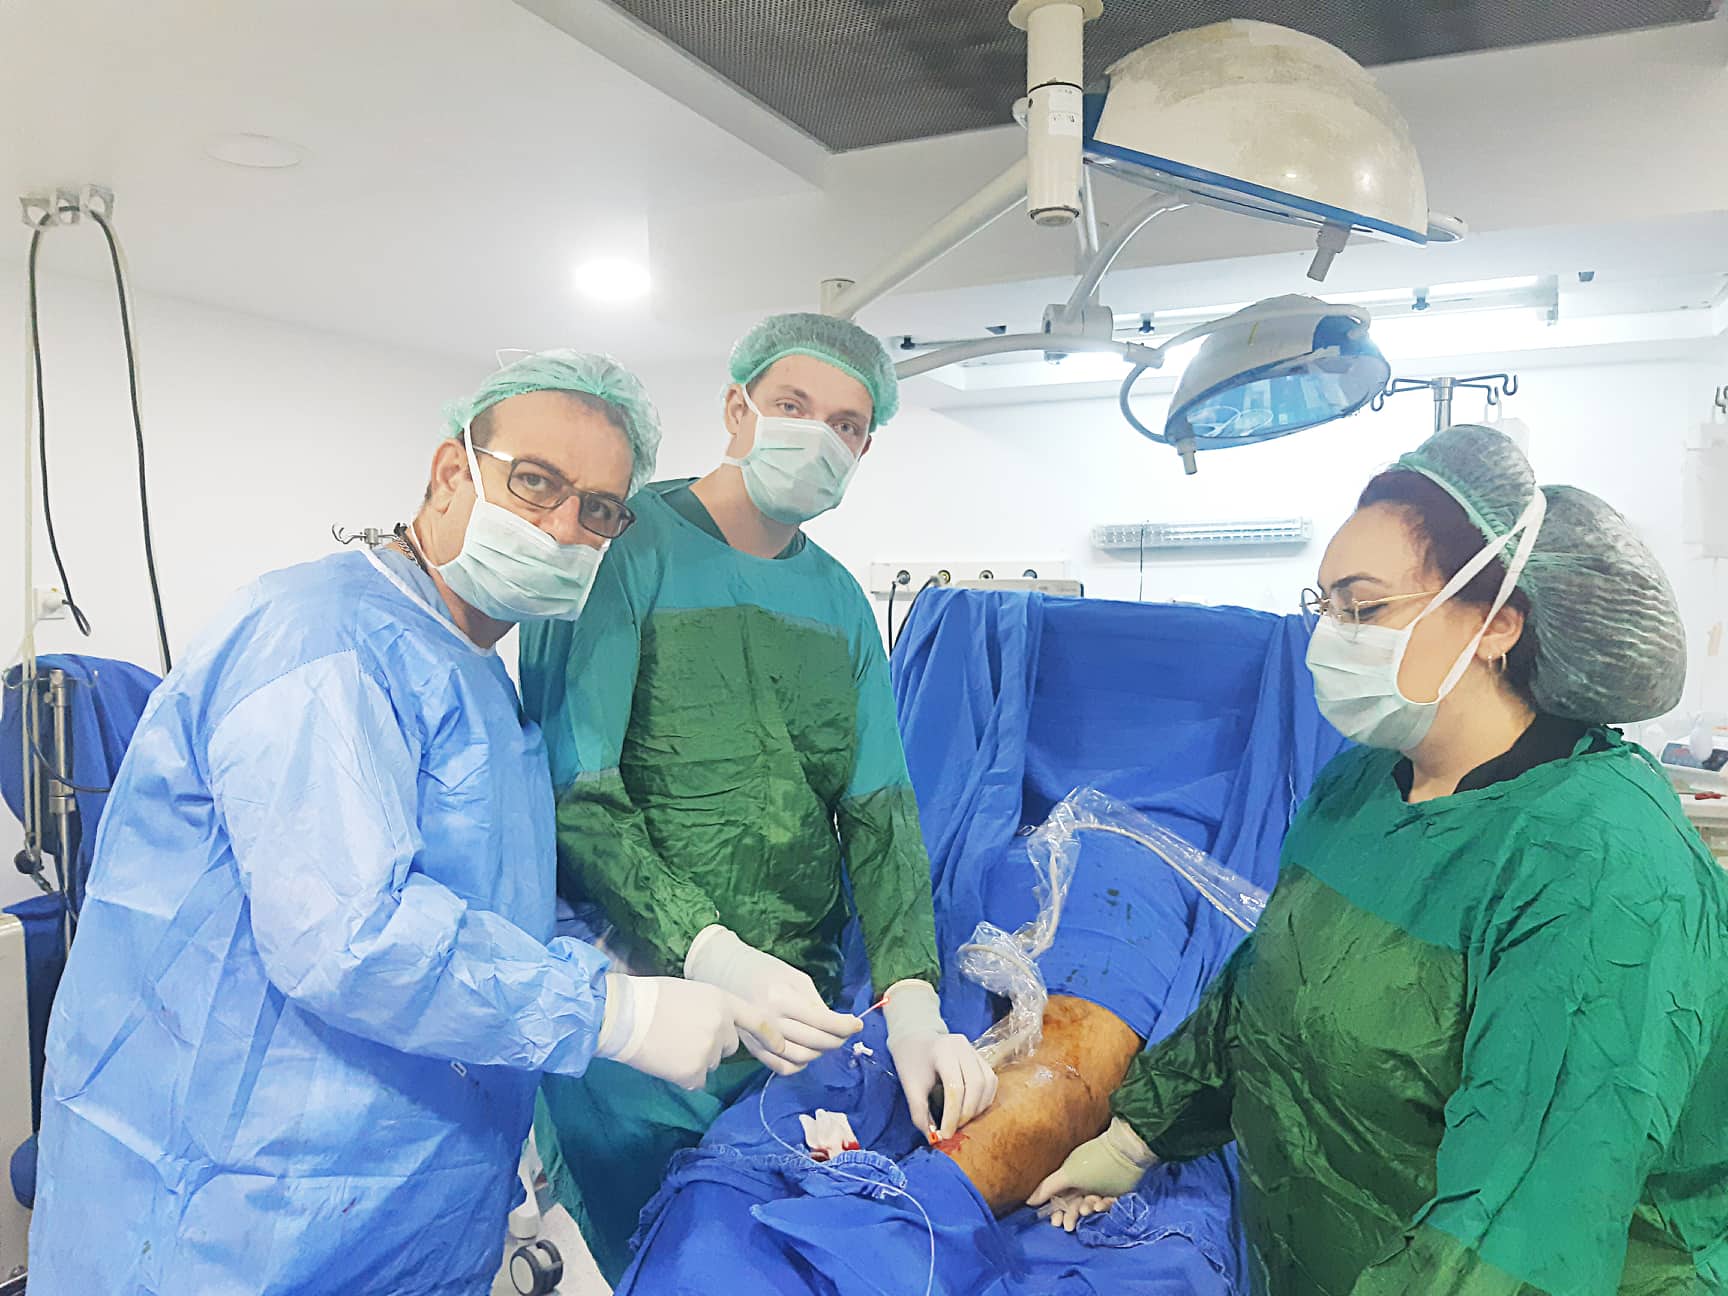 Франківський судинний хірург впровадив унікальну методику безопераційного лікування варикозу (ФОТО)